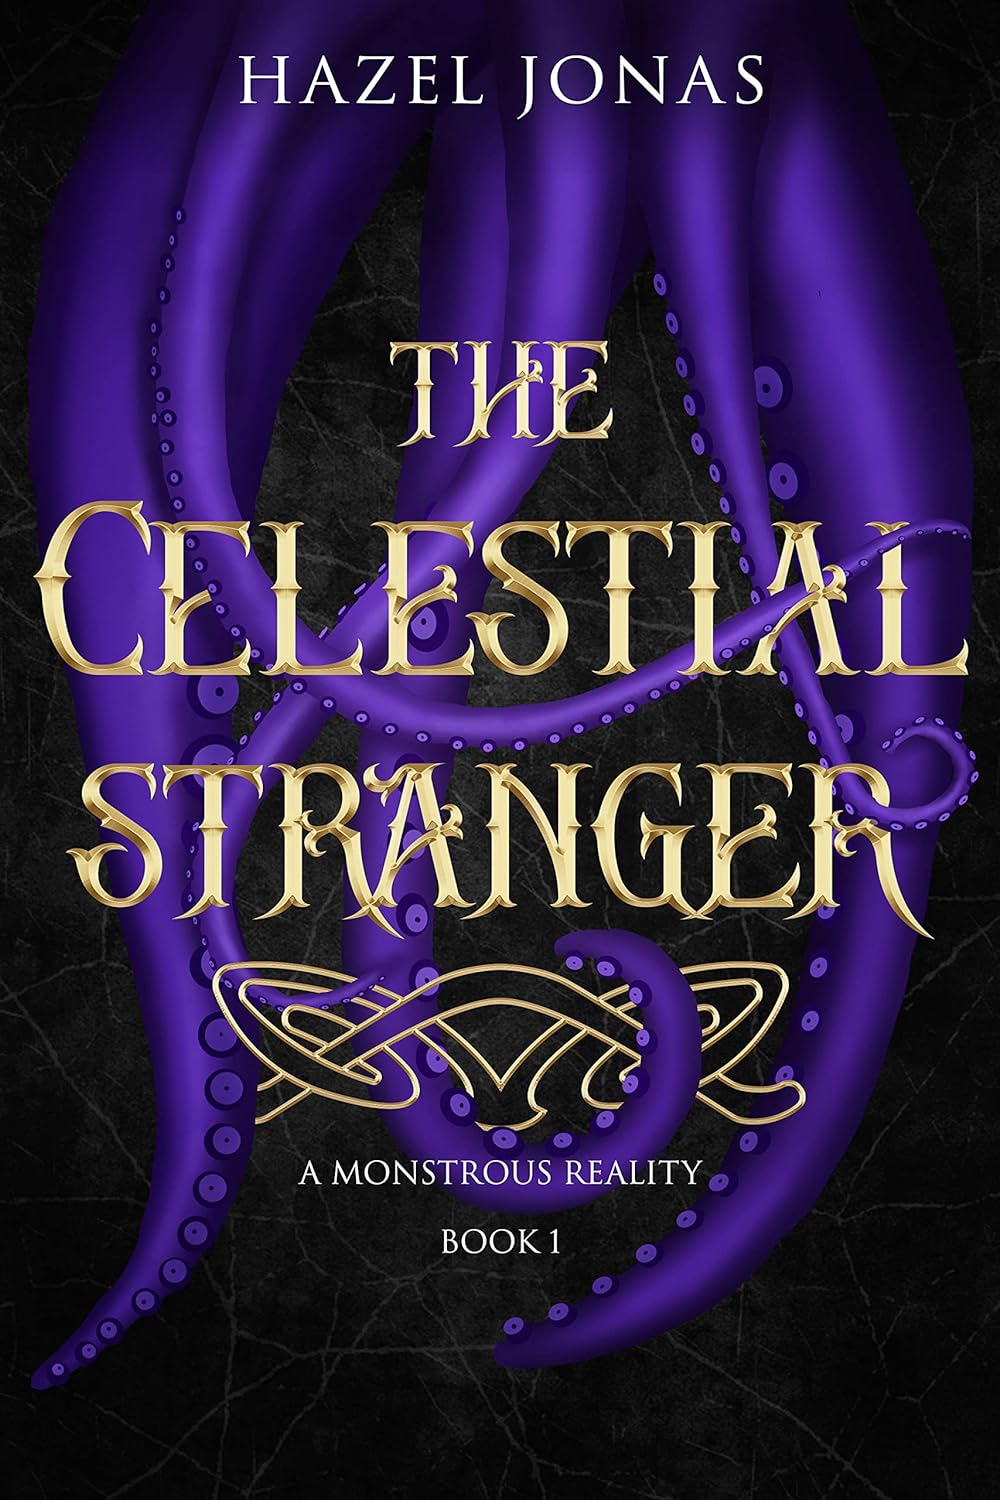 The Celestial Stranger by Hazel Jonas